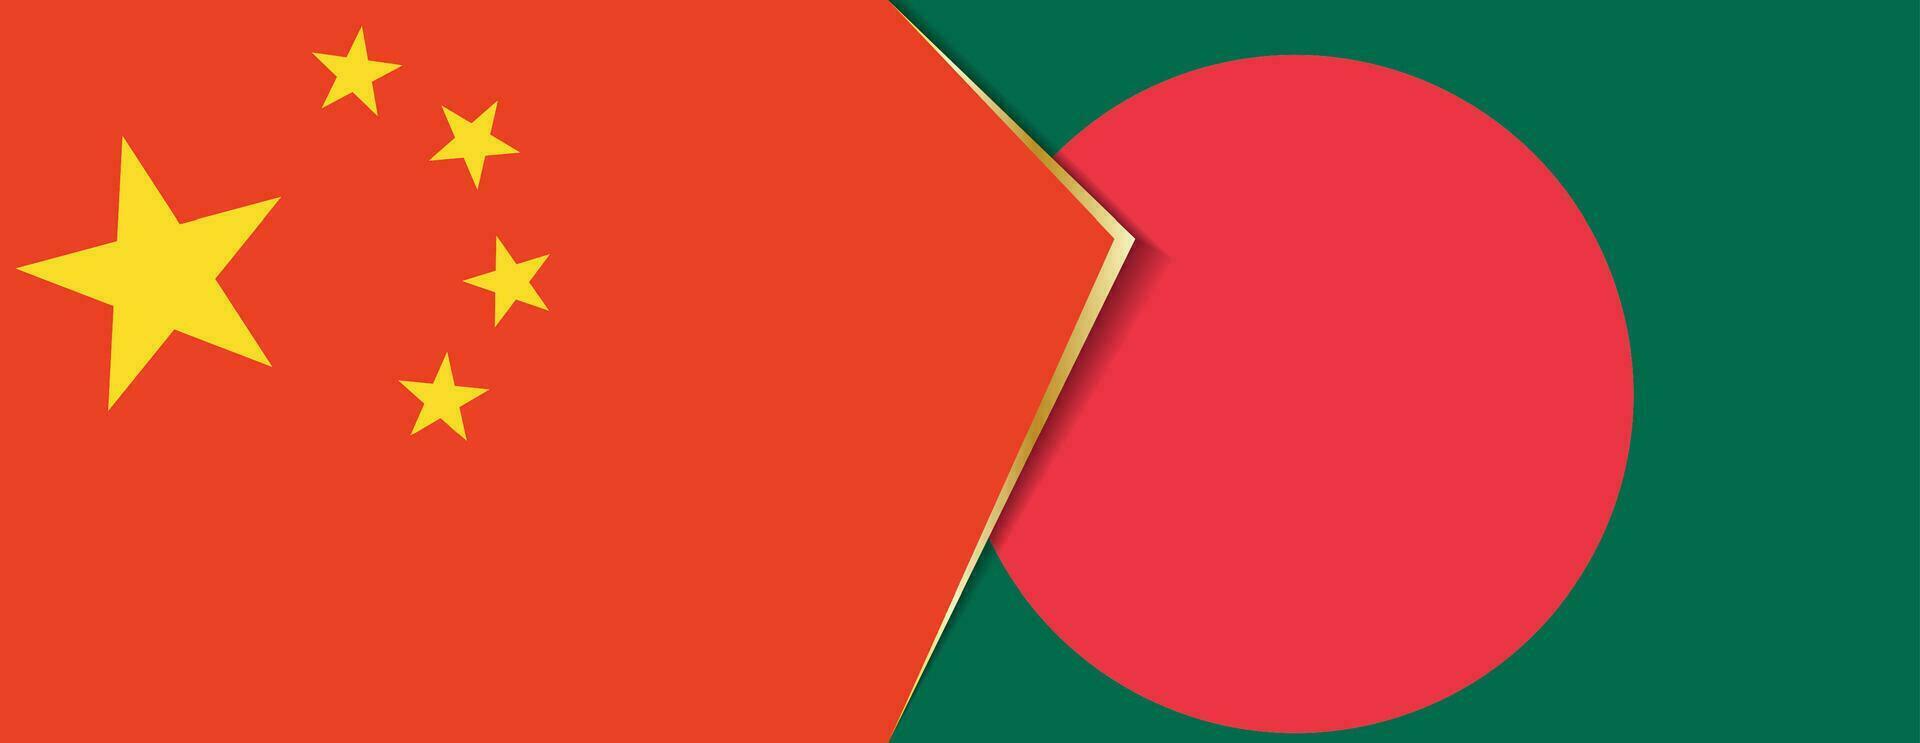 Chine et bangladesh drapeaux, deux vecteur drapeaux.